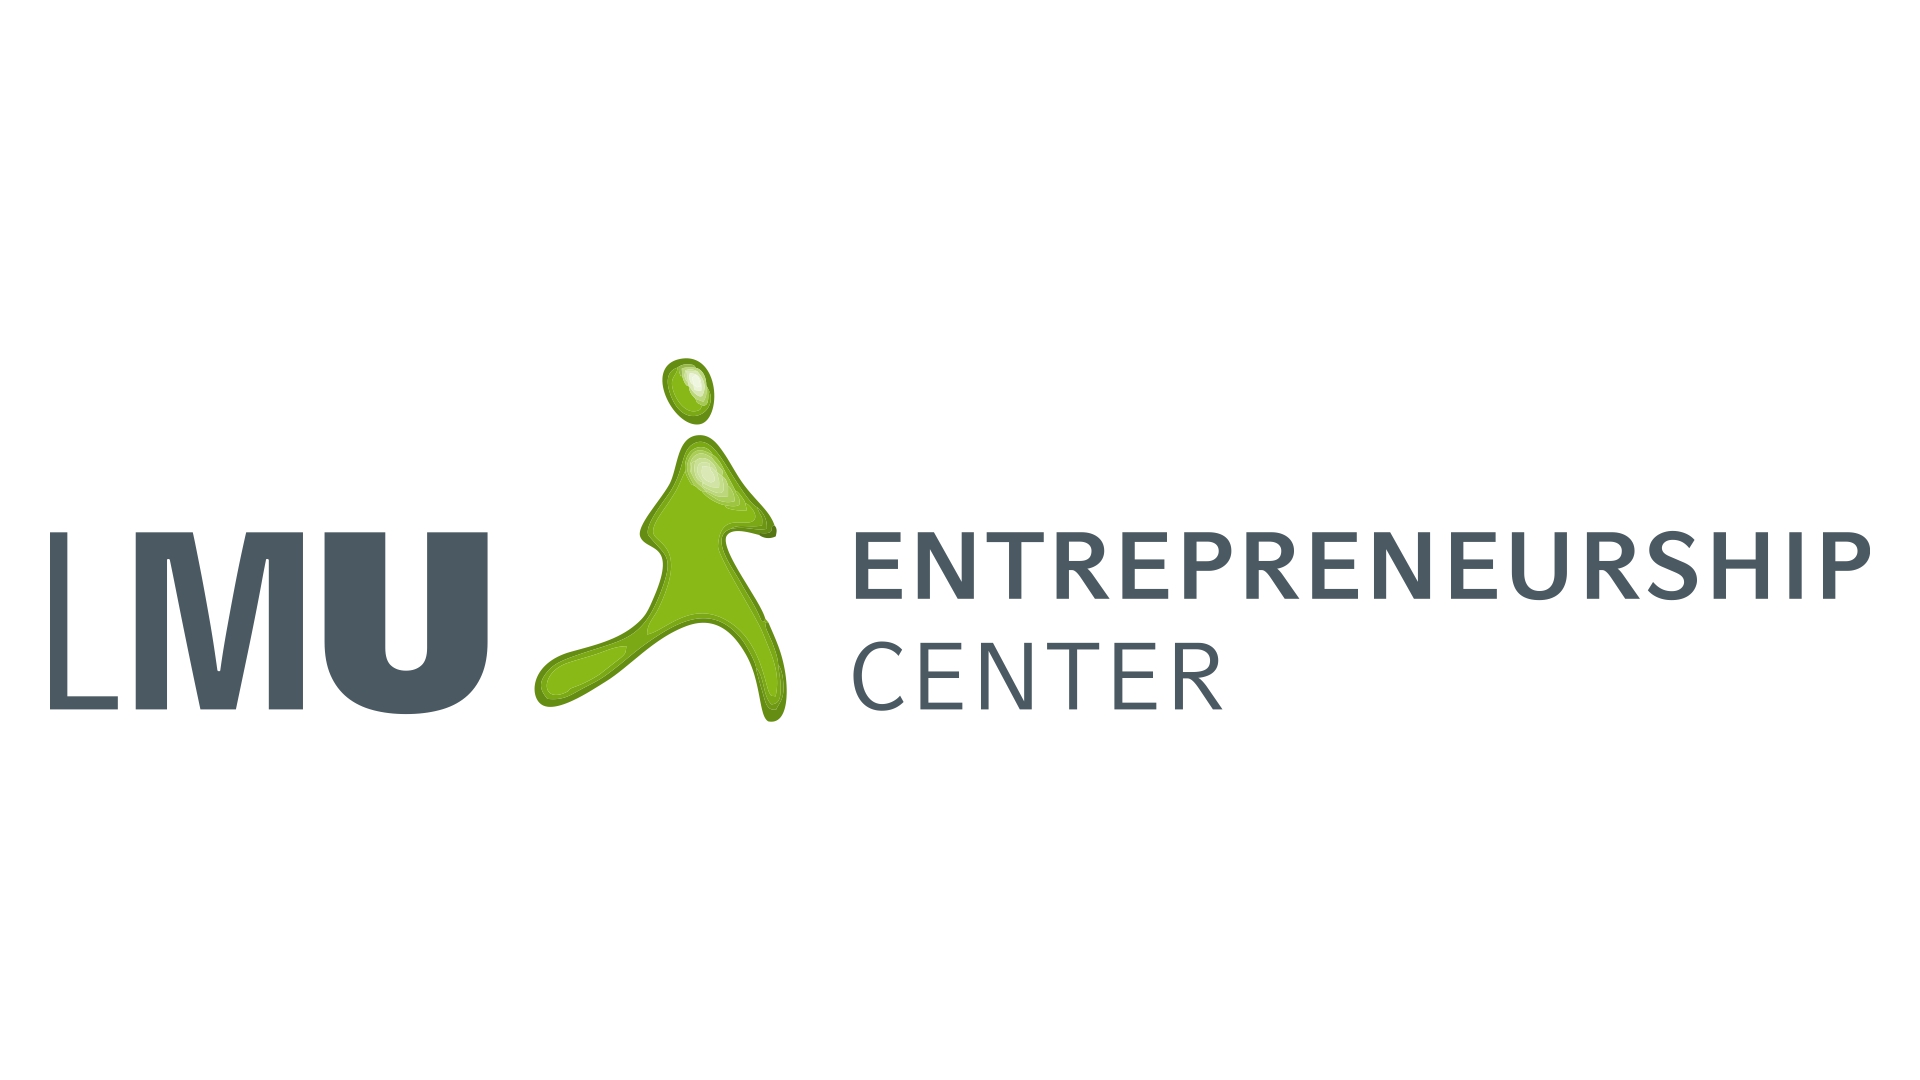 LMU_Entrepreneurship